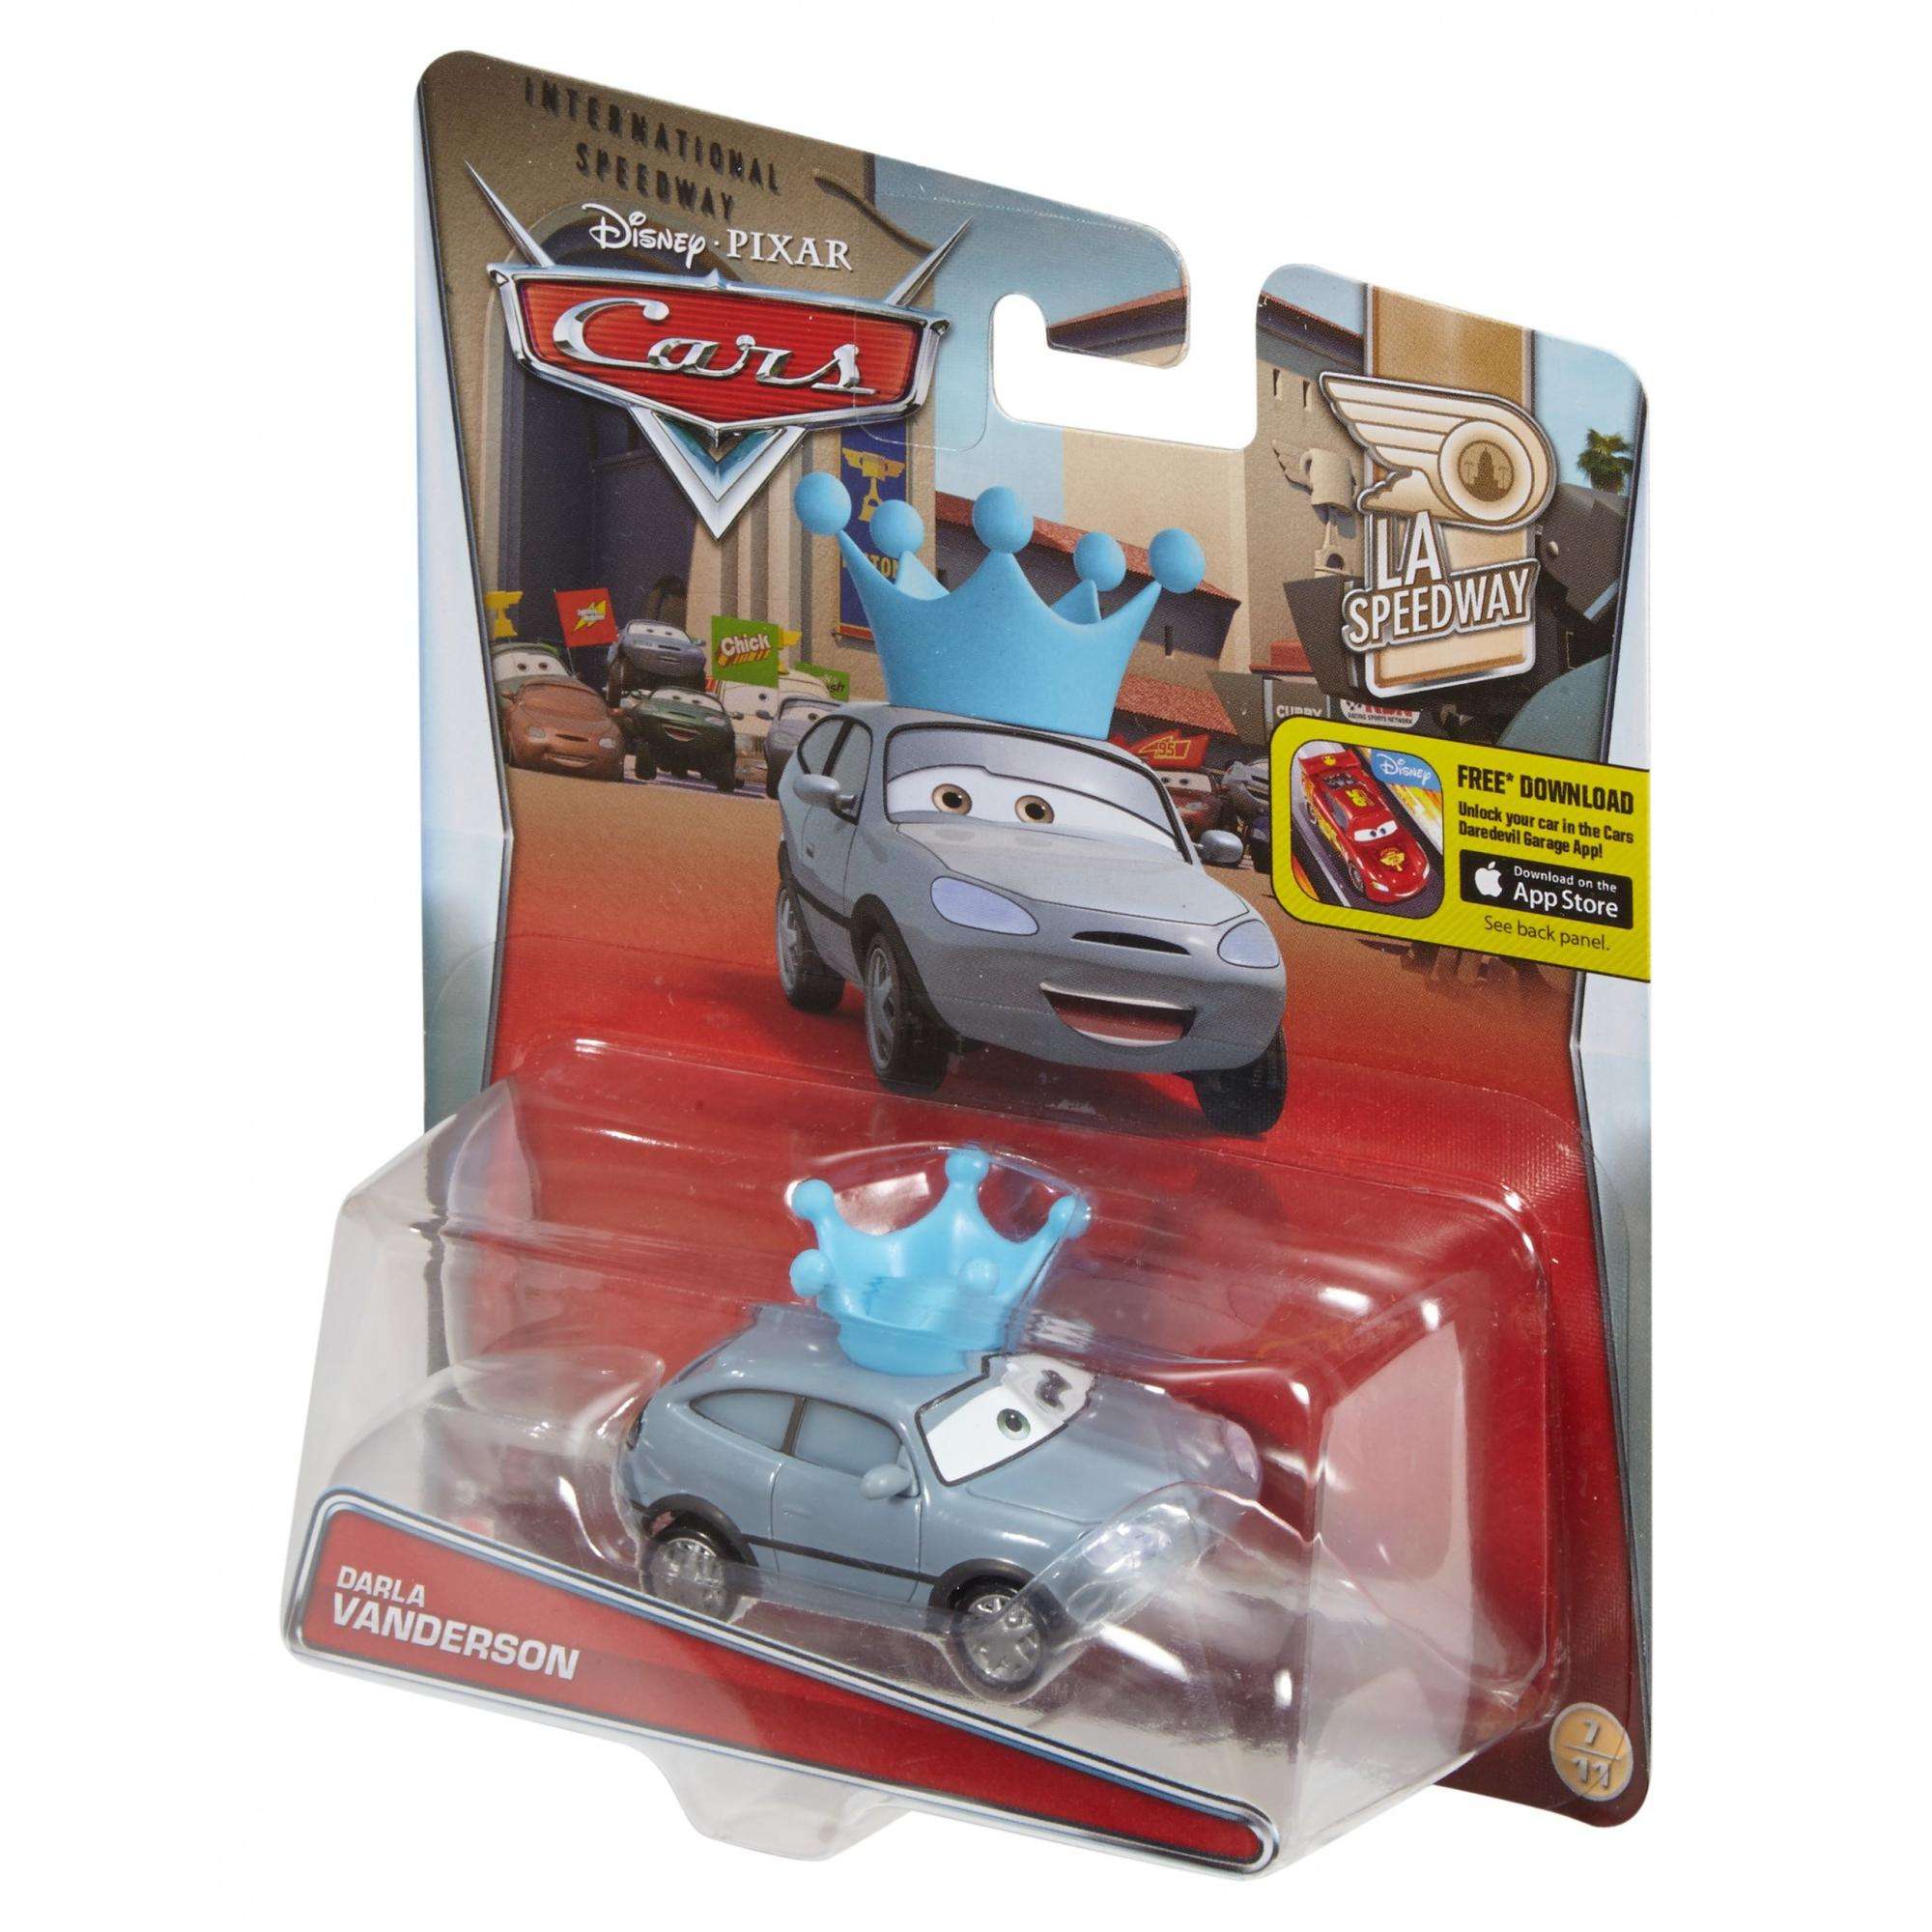 Disney/Pixar Cars Darla Vanderson Die-Cast Vehicle - image 5 of 5